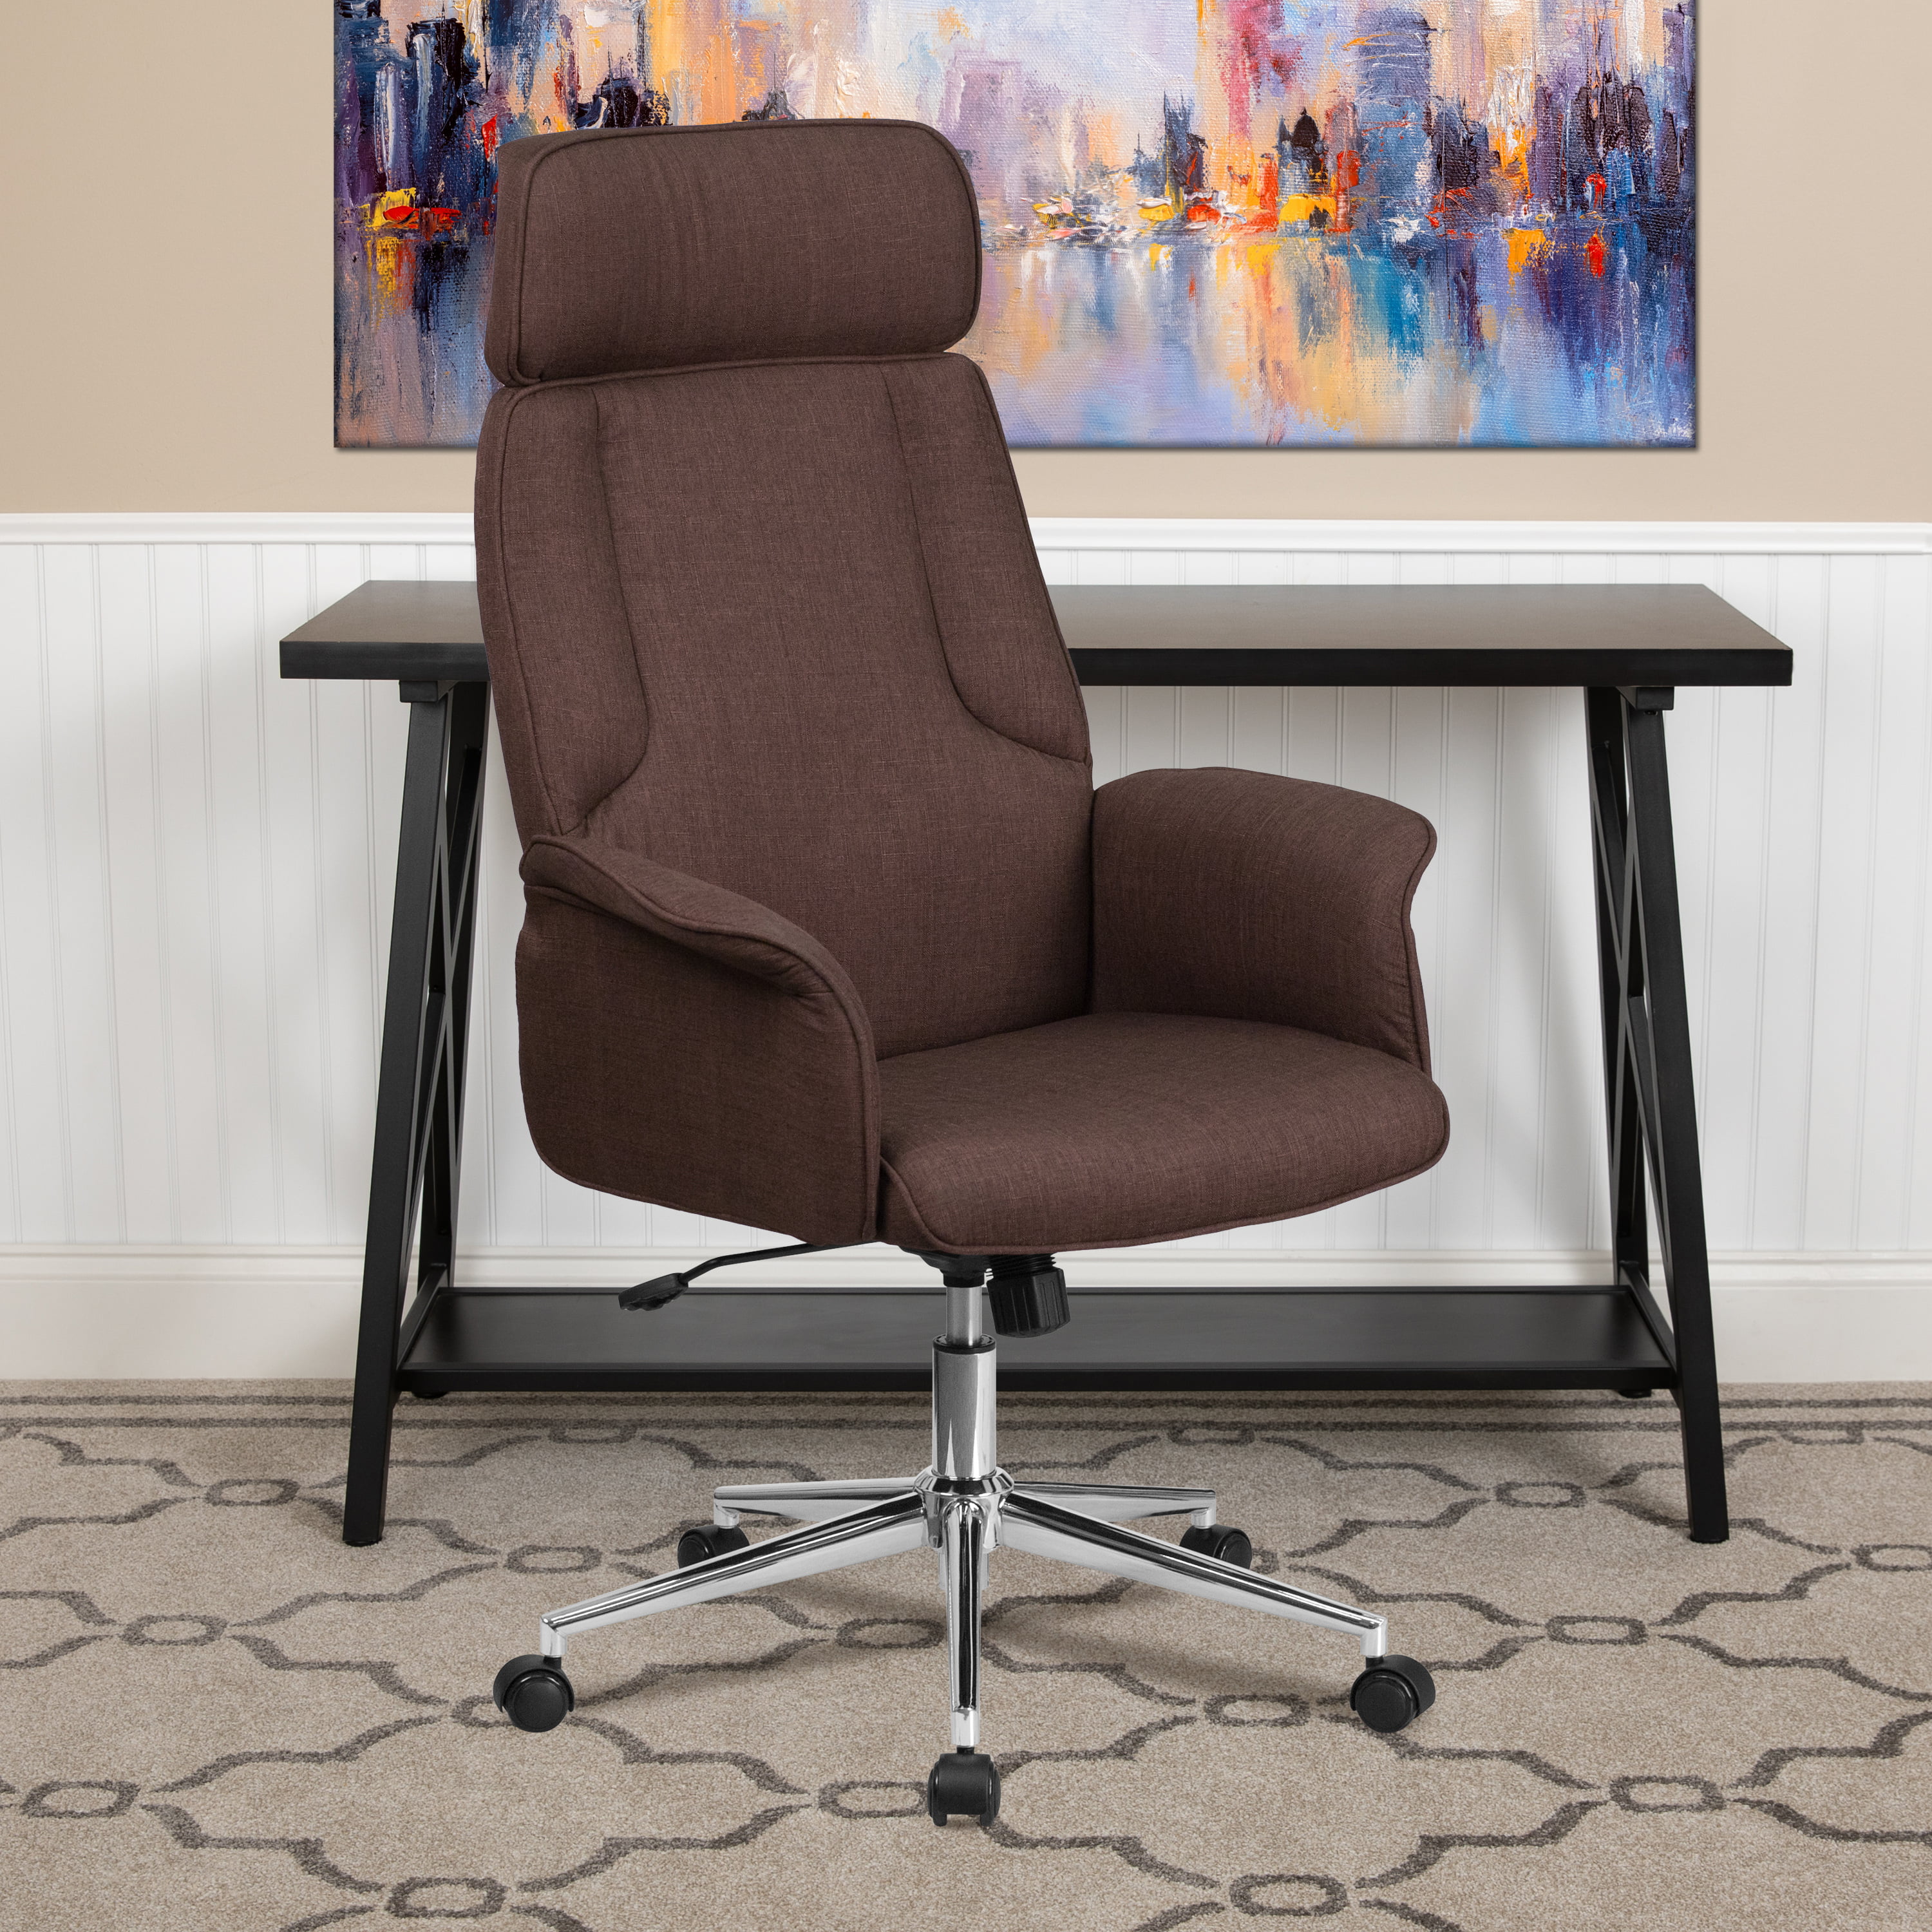 Details about   TALL DESIGNER CONFERENCE ROOM Modern Office highback Tilt Chair Black Arms Desk 